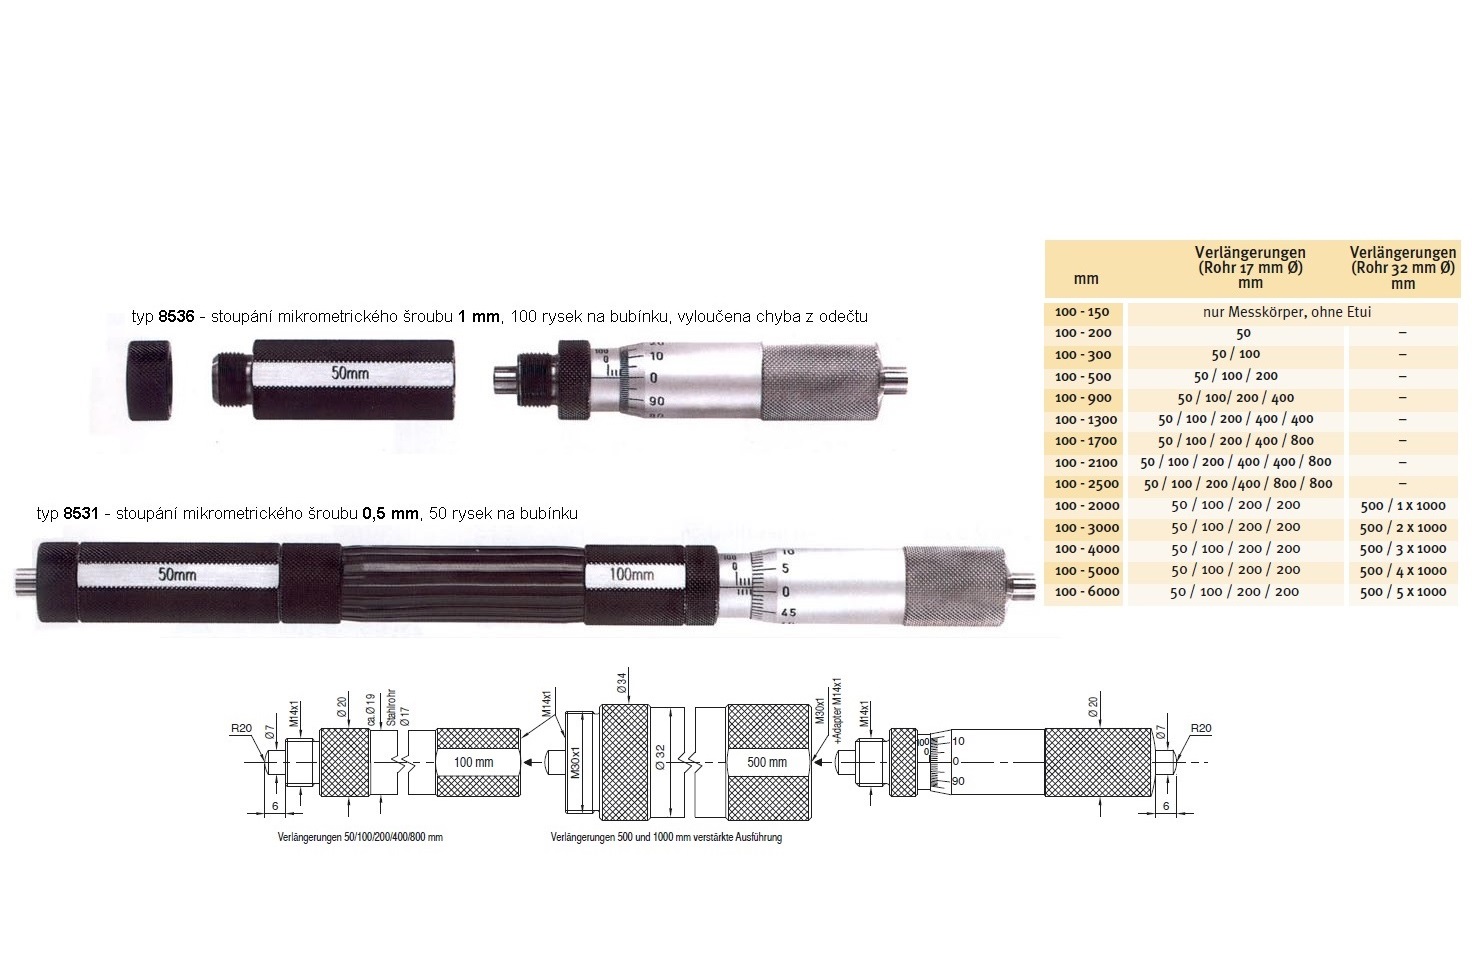 Mikrometrický odpich skládací HARTIG 100-500 mm, stoupání šroubu 1 mm, doteky tvrdokov